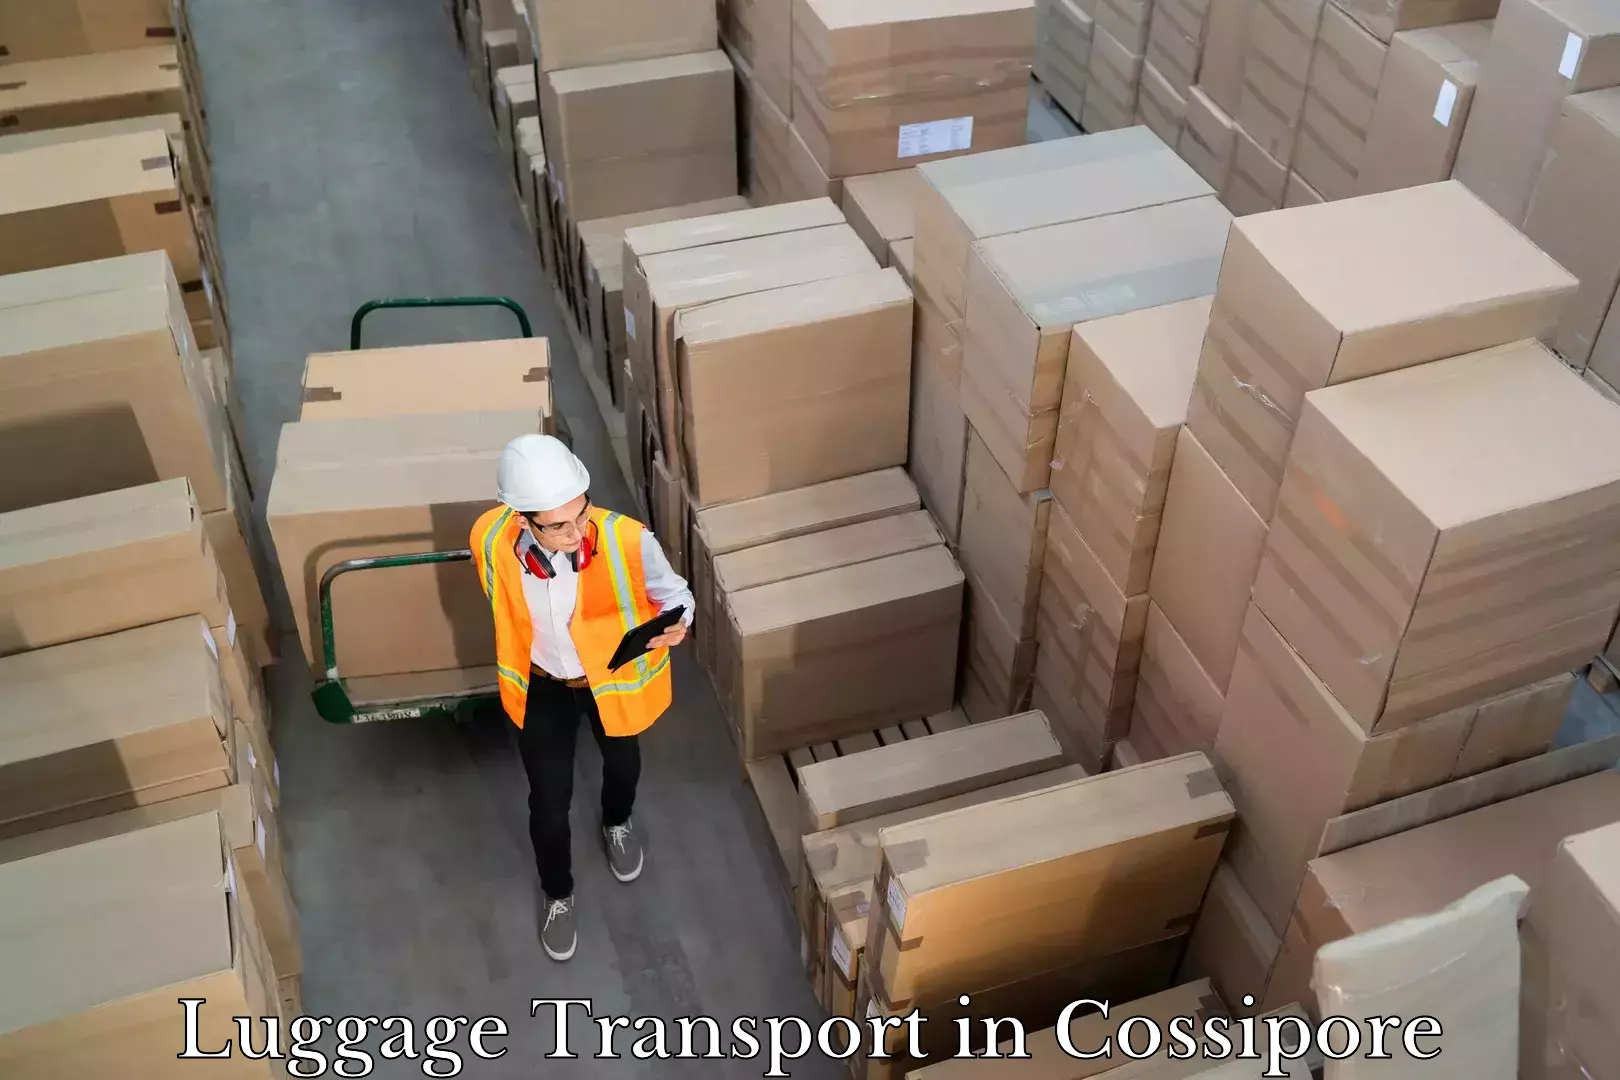 Baggage relocation service in Cossipore